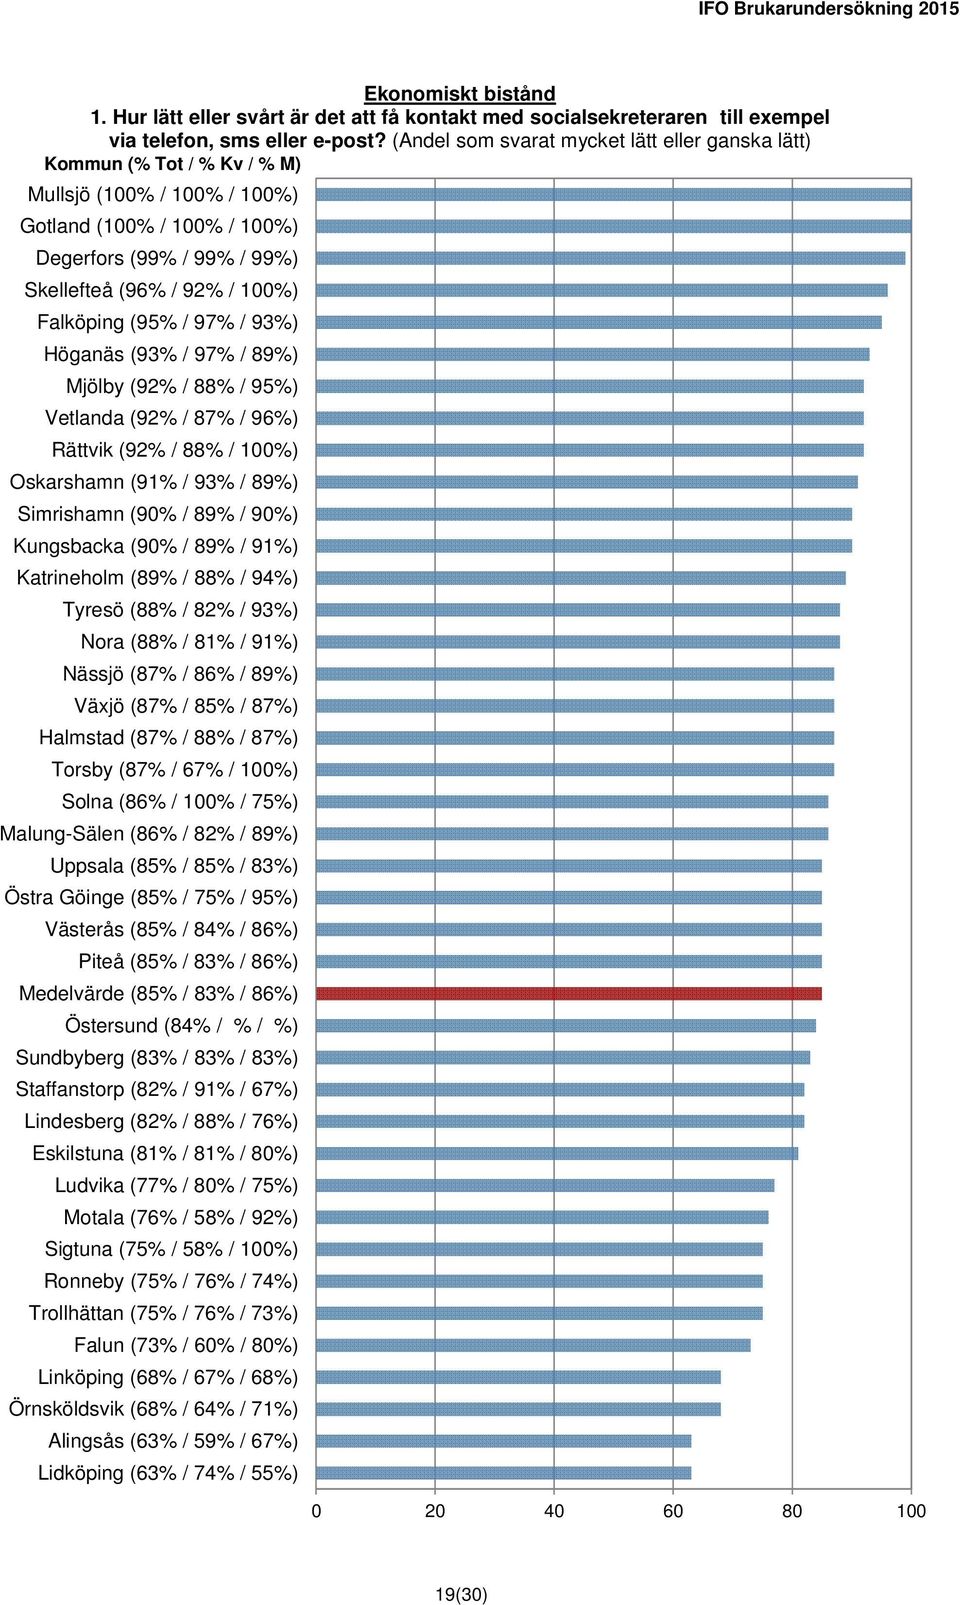 Höganäs (93% / 97% / 89%) Mjölby (92% / 88% / 95%) Vetlanda (92% / 87% / 96%) Rättvik (92% / 88% / 100%) Oskarshamn (91% / 93% / 89%) Simrishamn (90% / 89% / 90%) Kungsbacka (90% / 89% / 91%)